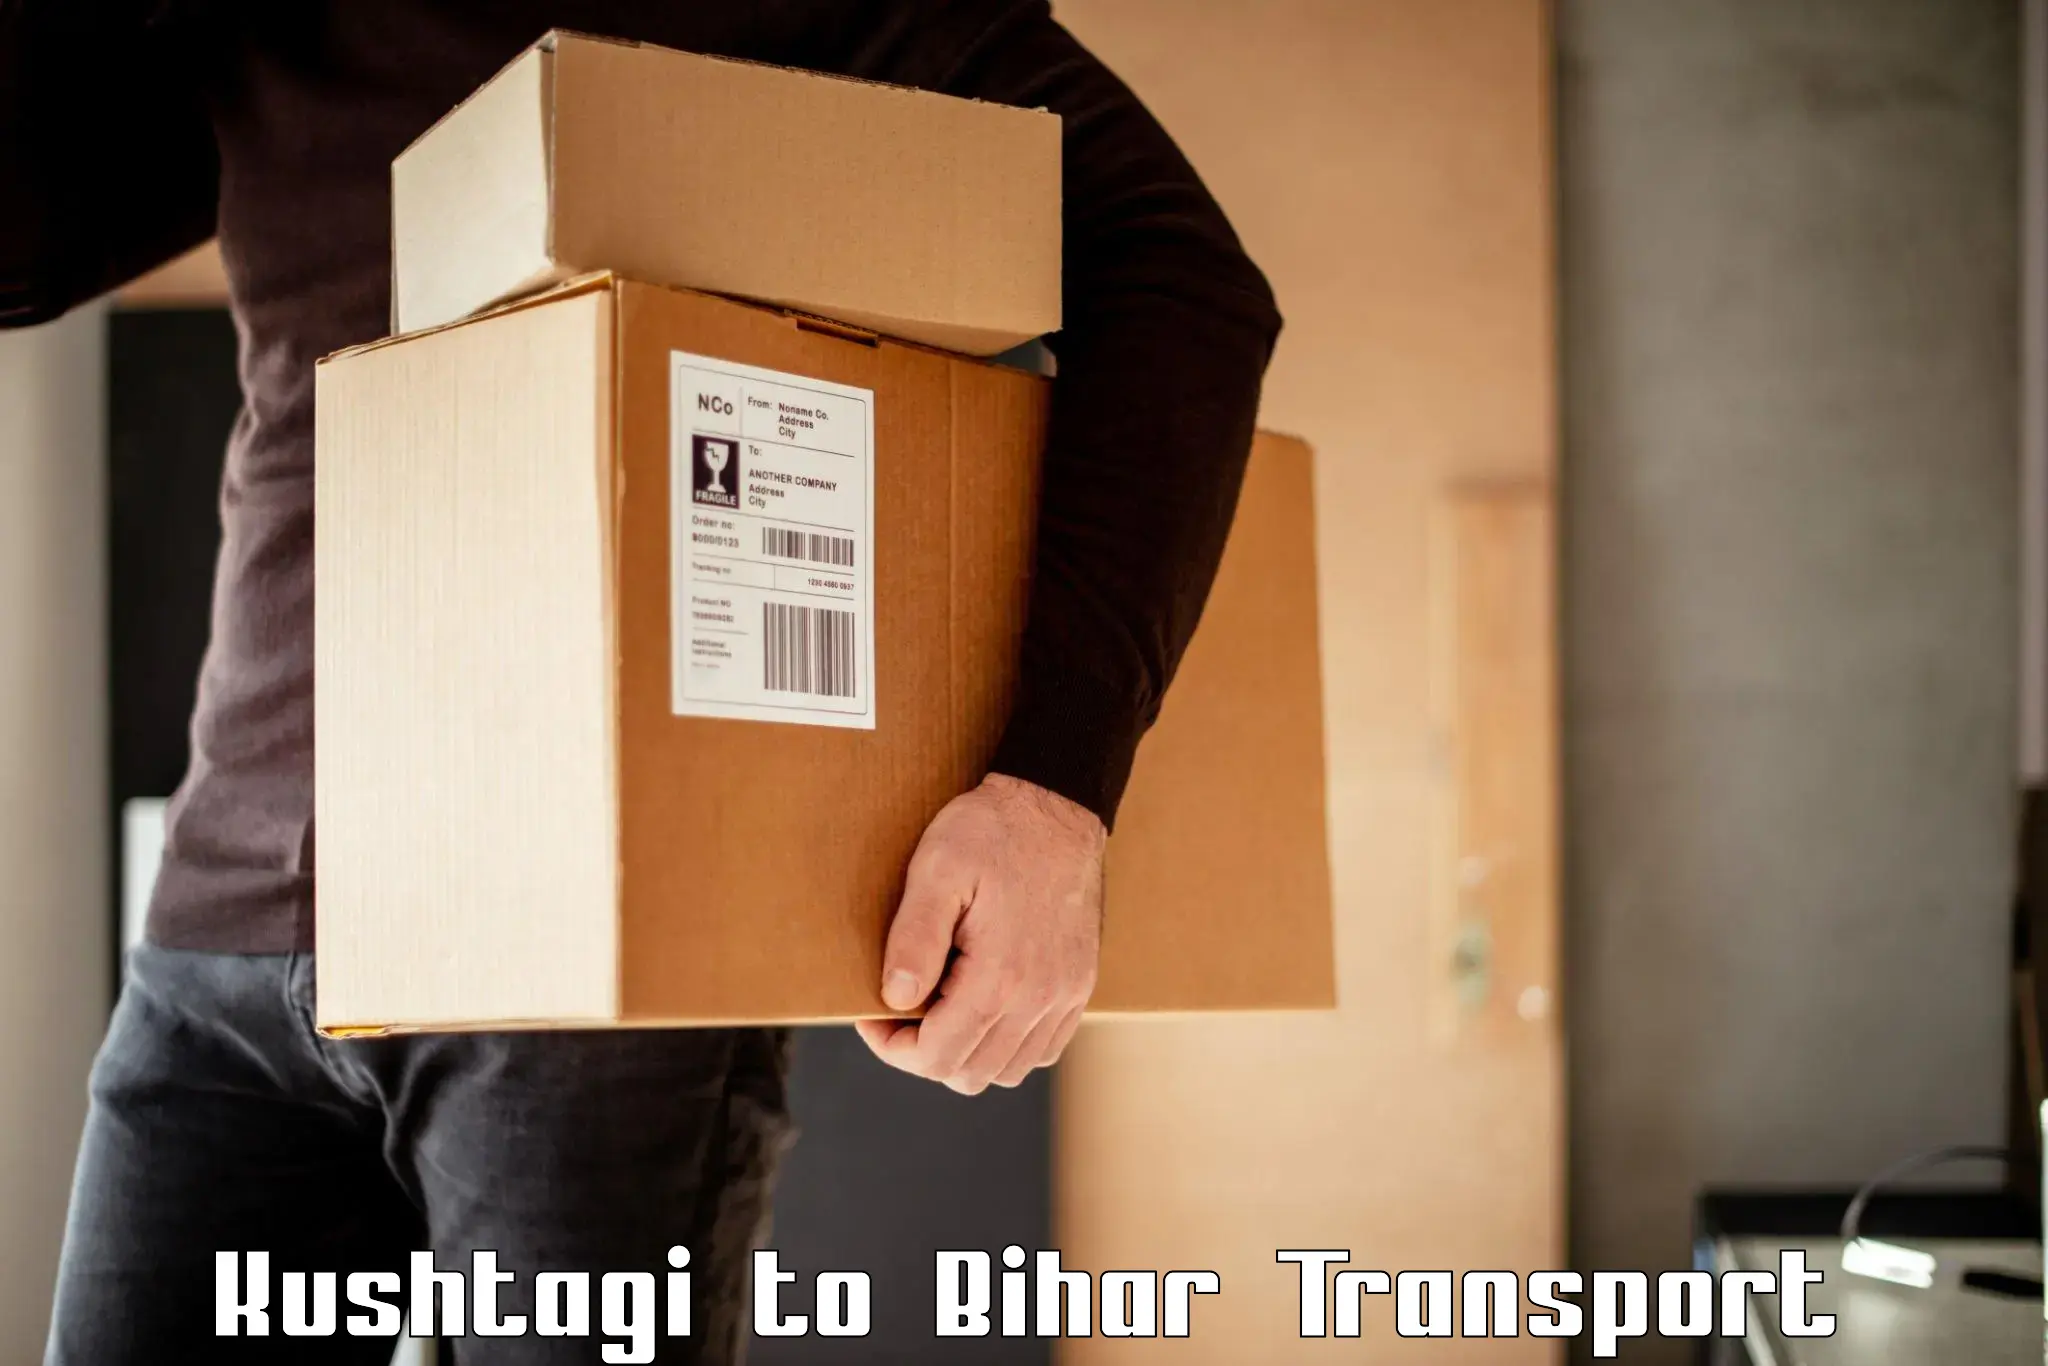 Pick up transport service Kushtagi to Madhepura